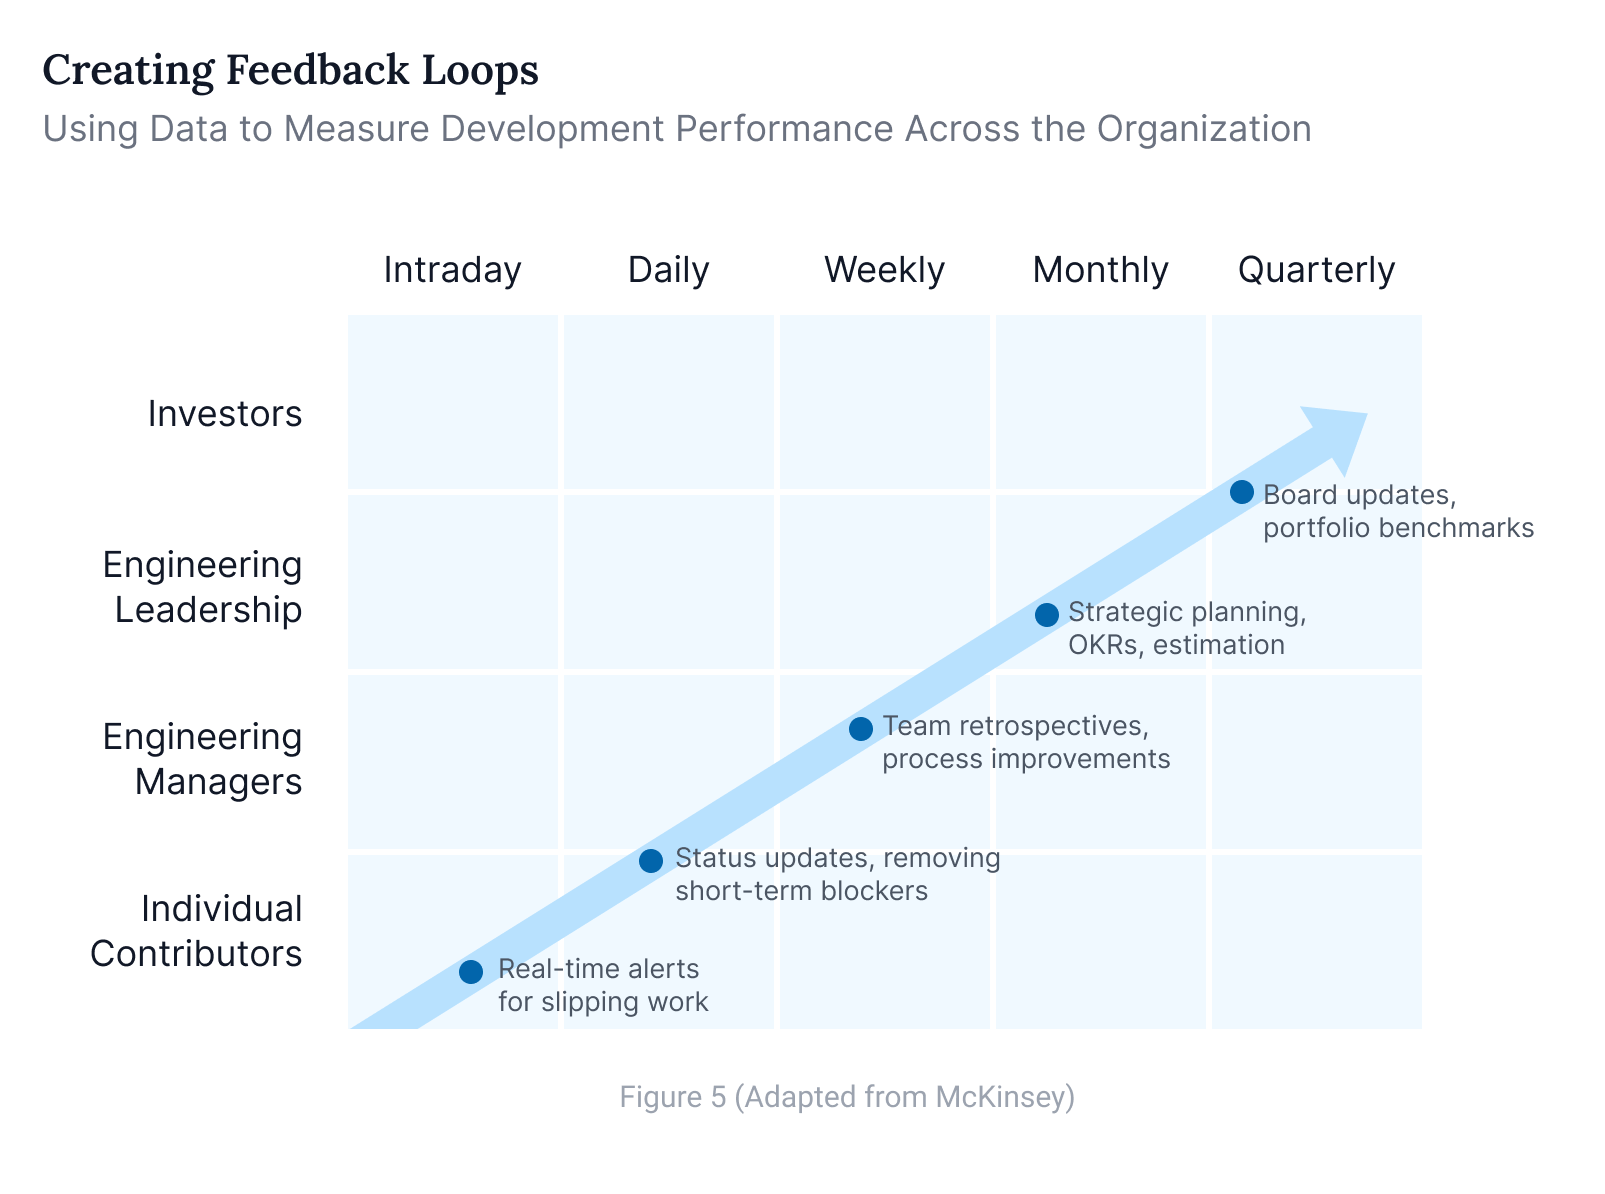 Creating feedback loops